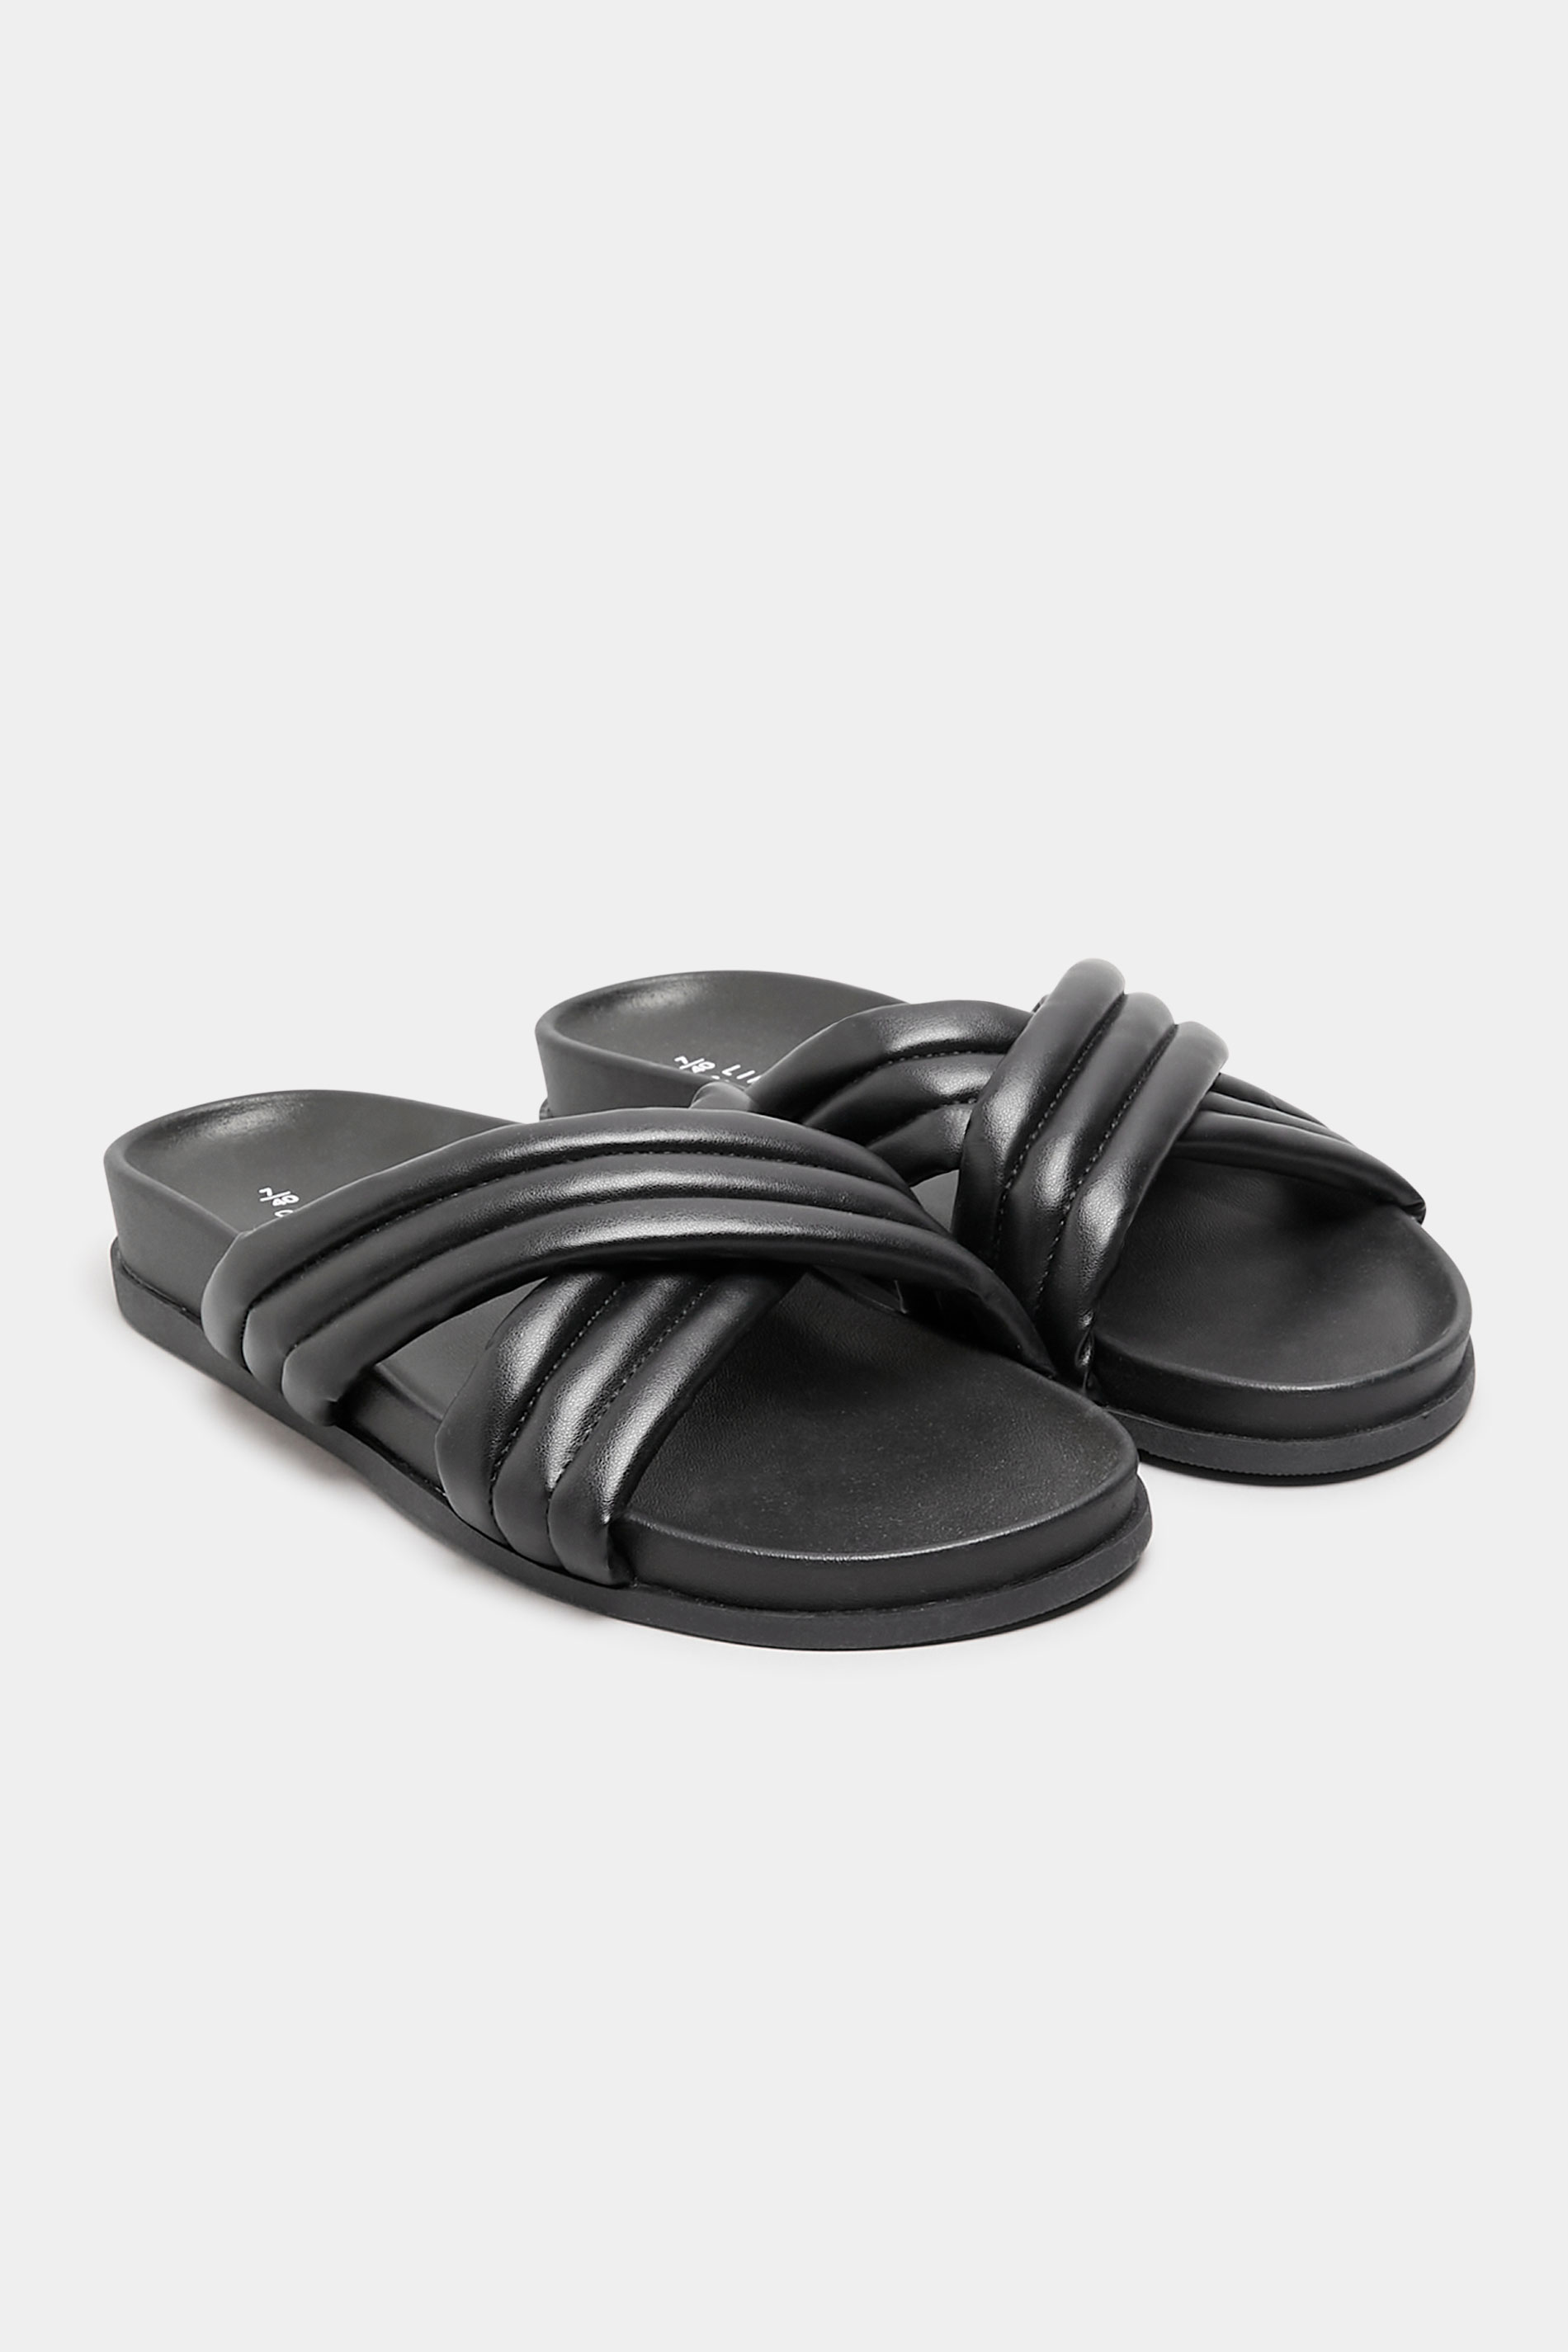 Chaussures Pieds Larges Sandales Pieds Larges | Sandales Noires Molletonnées Croisées Pieds Extra Larges EEE - JE75418